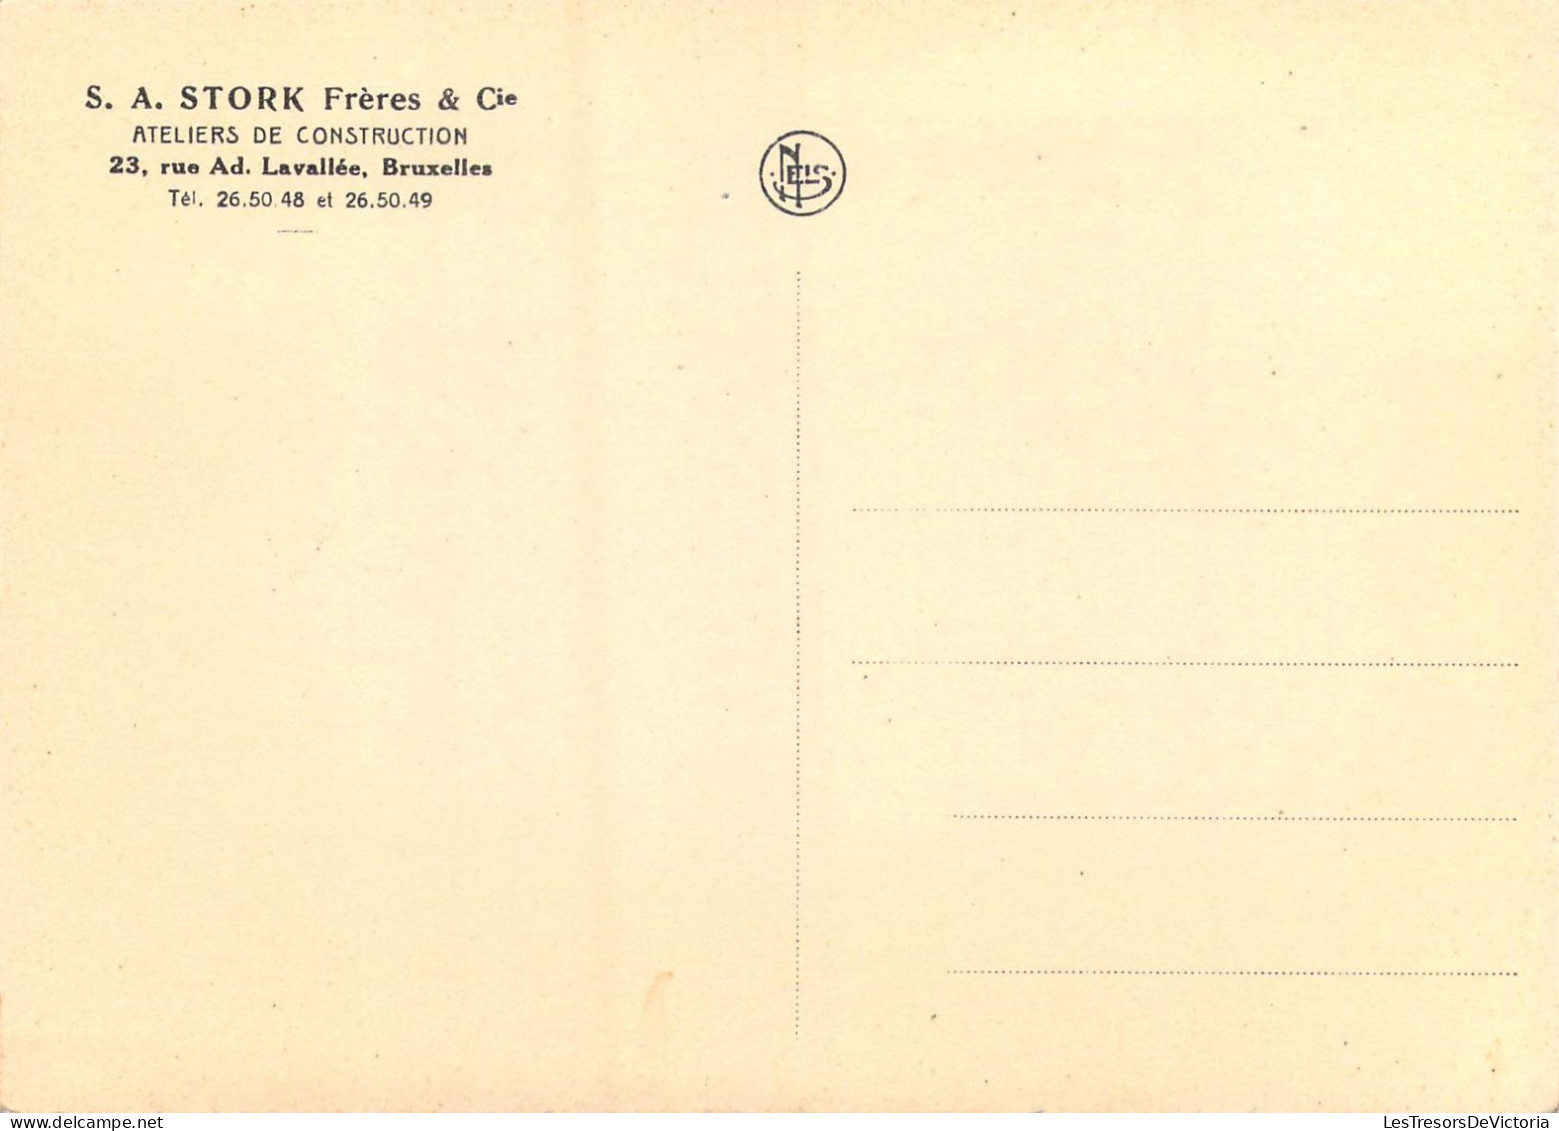 PUBLICITES - S.A. Stork Frères & Cie - Ateliers De Construction - 23 Rue Ad. Lavallée Bruxelles - Carte Postale Ancienne - Werbepostkarten